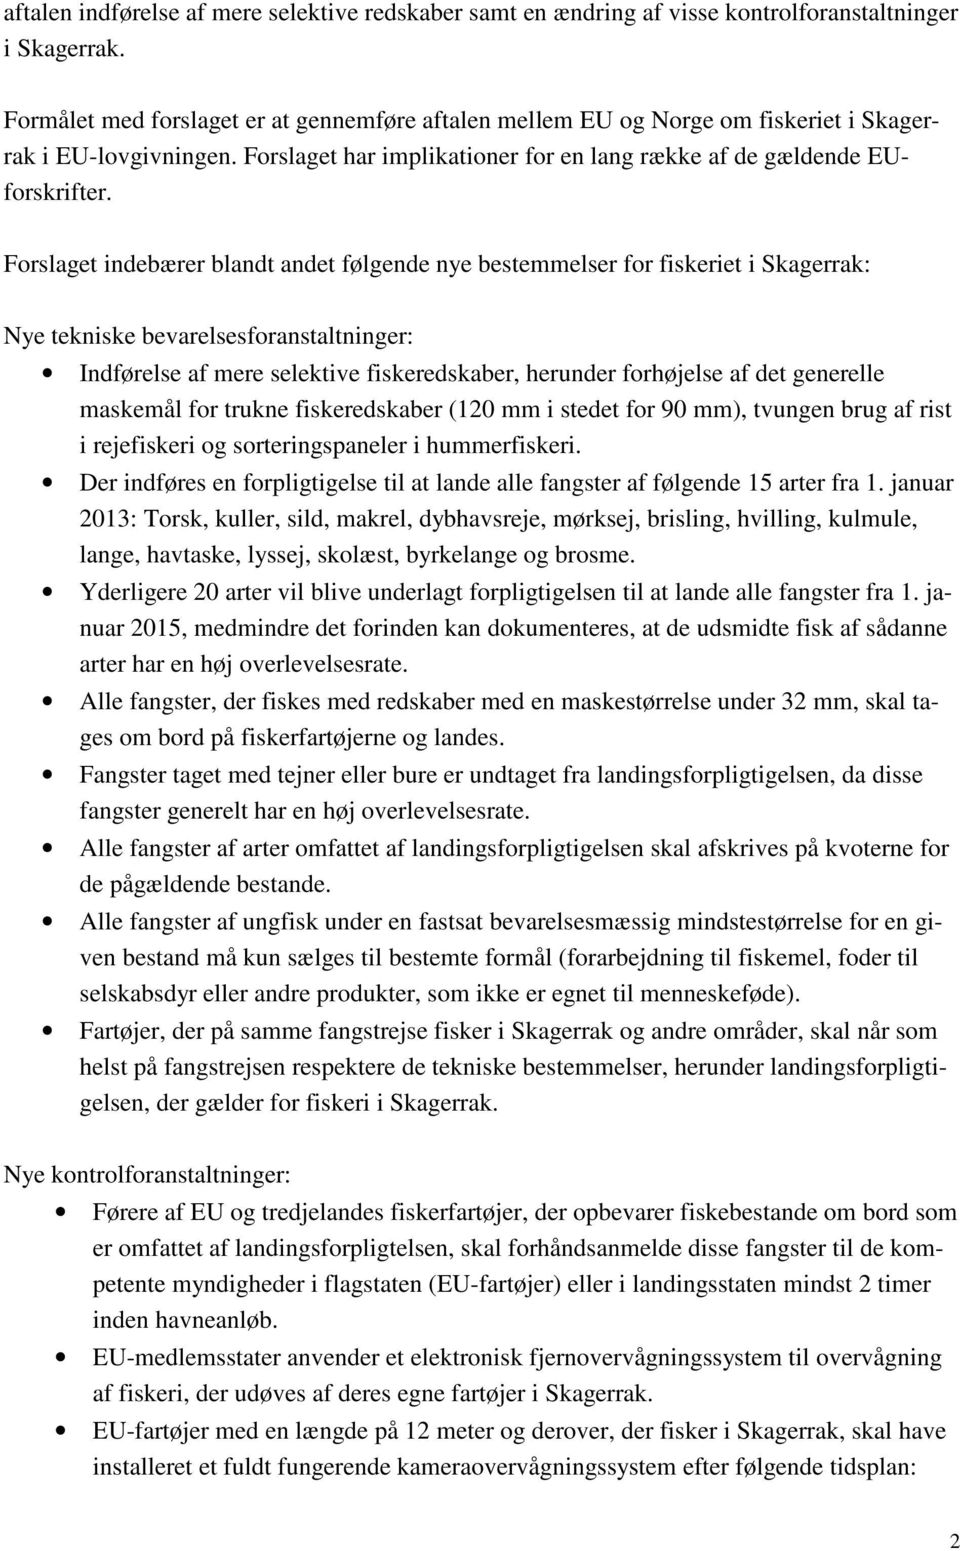 Forslaget indebærer blandt andet følgende nye bestemmelser for fiskeriet i Skagerrak: Nye tekniske bevarelsesforanstaltninger: Indførelse af mere selektive fiskeredskaber, herunder forhøjelse af det